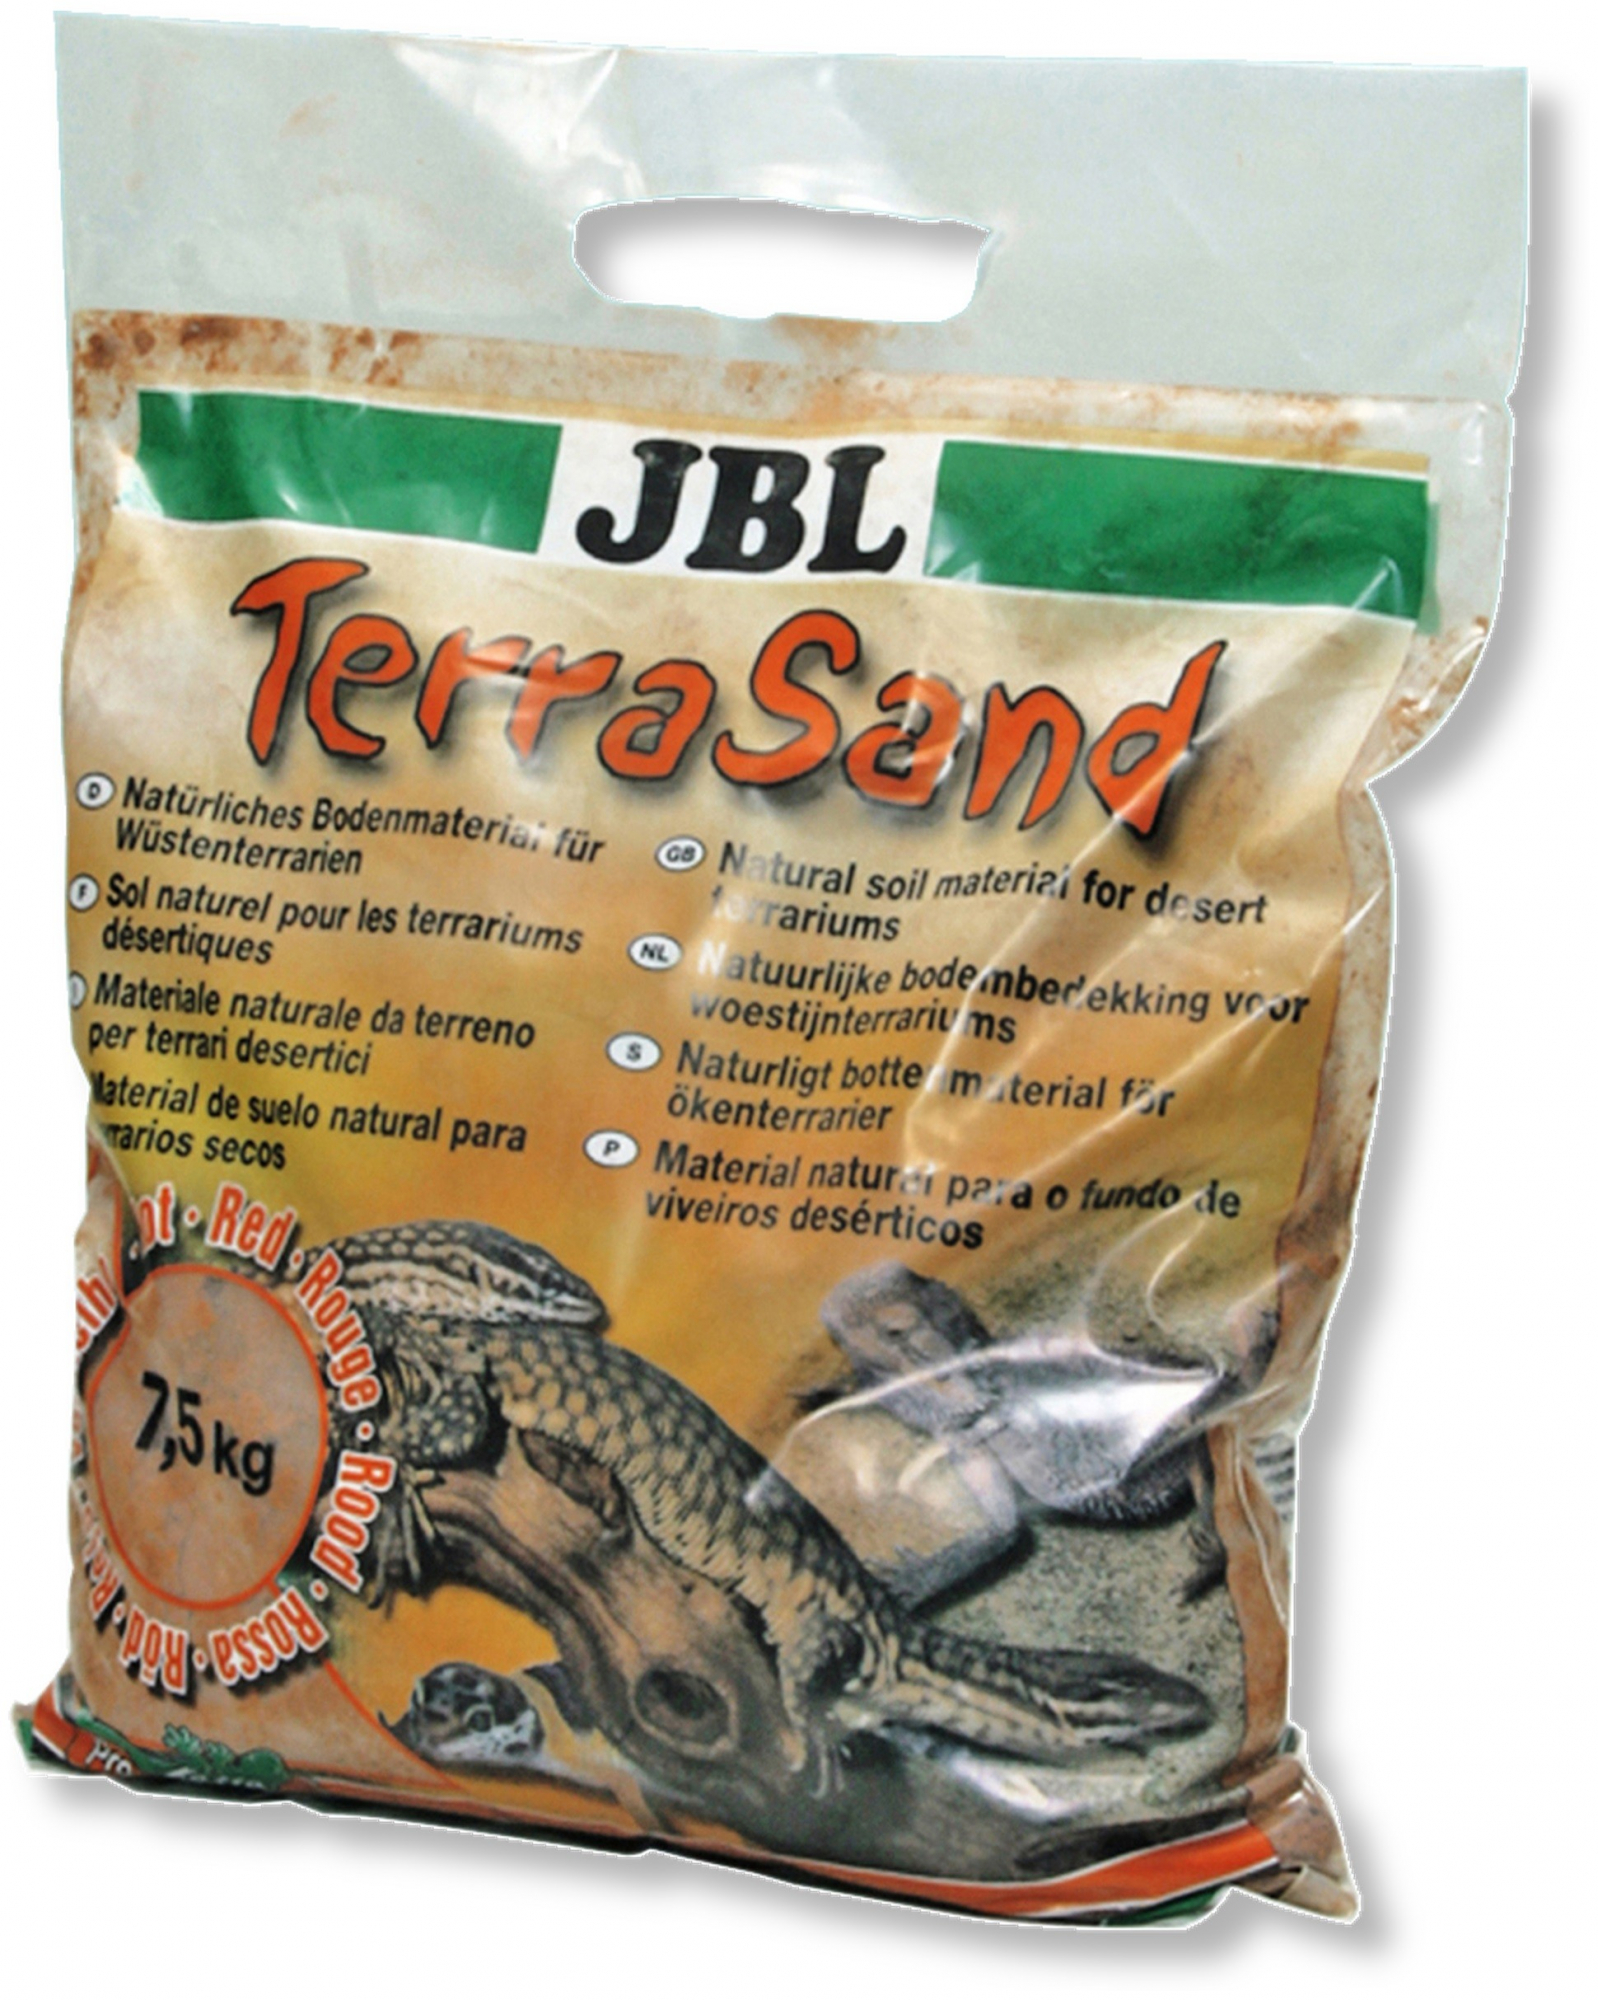 Material natural para o fundo de viveiros desérticos JBL Terra Sand